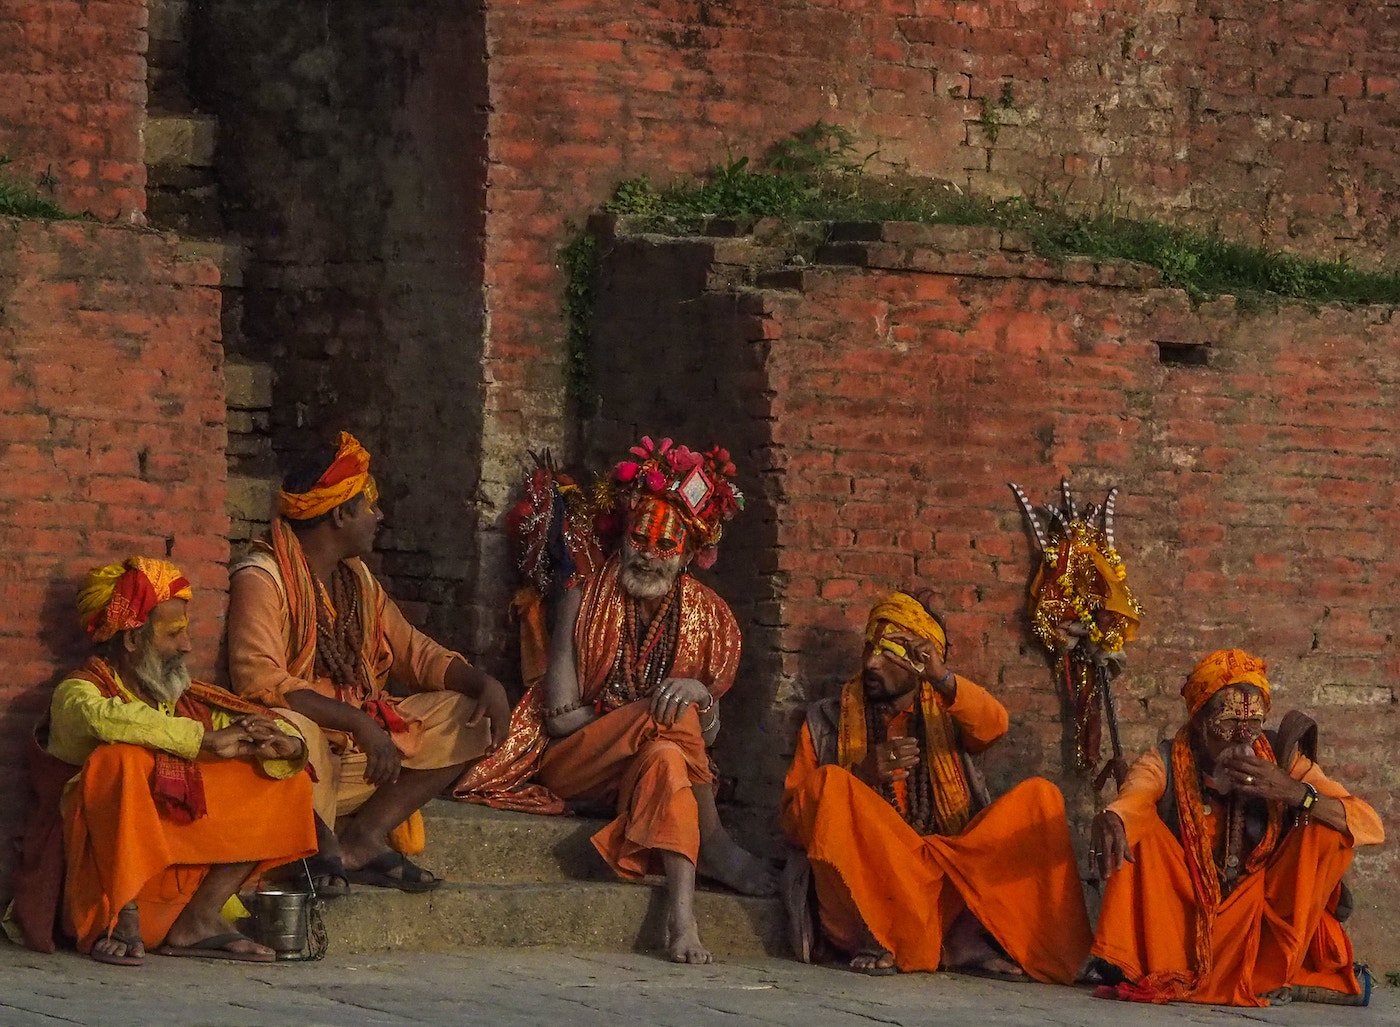 Kathmandu, Nepal